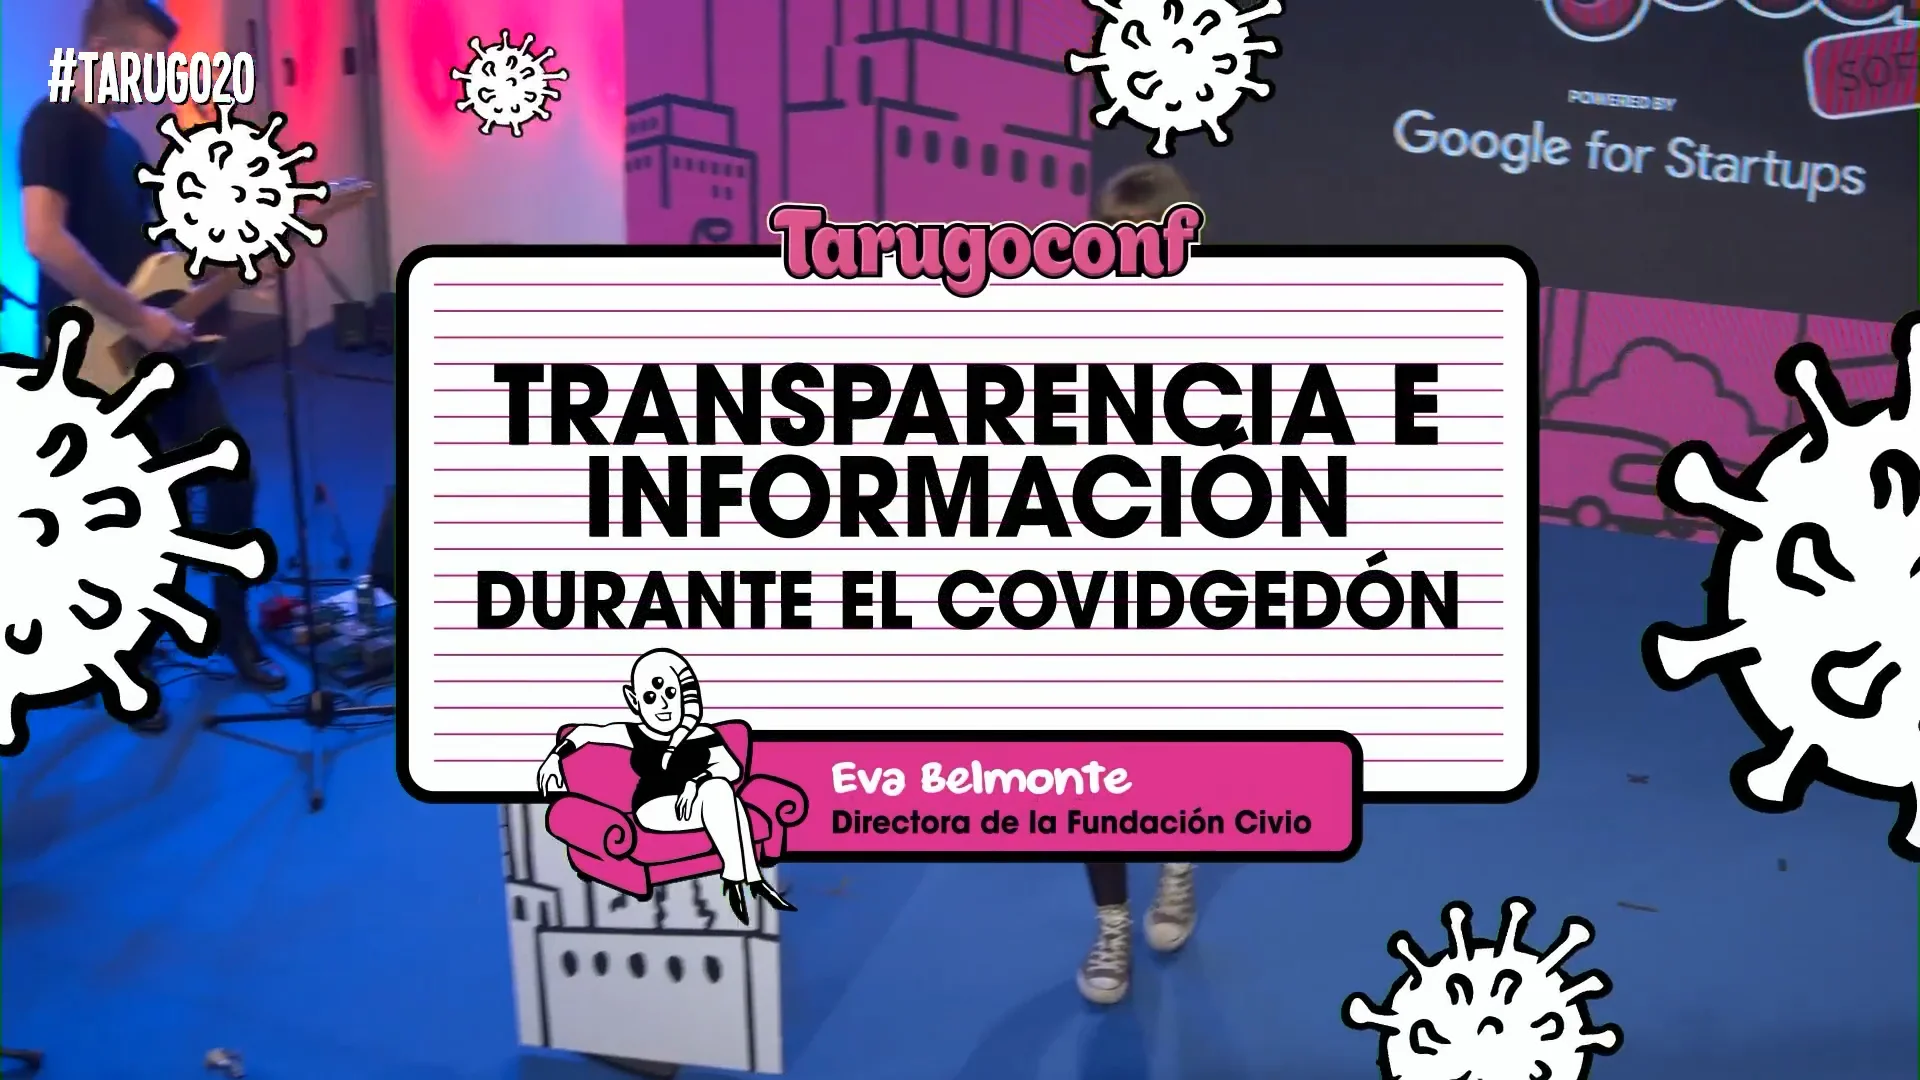 #tarugo20 - Transparencia e Información durante el COVIDgedón por Eva Belmonte